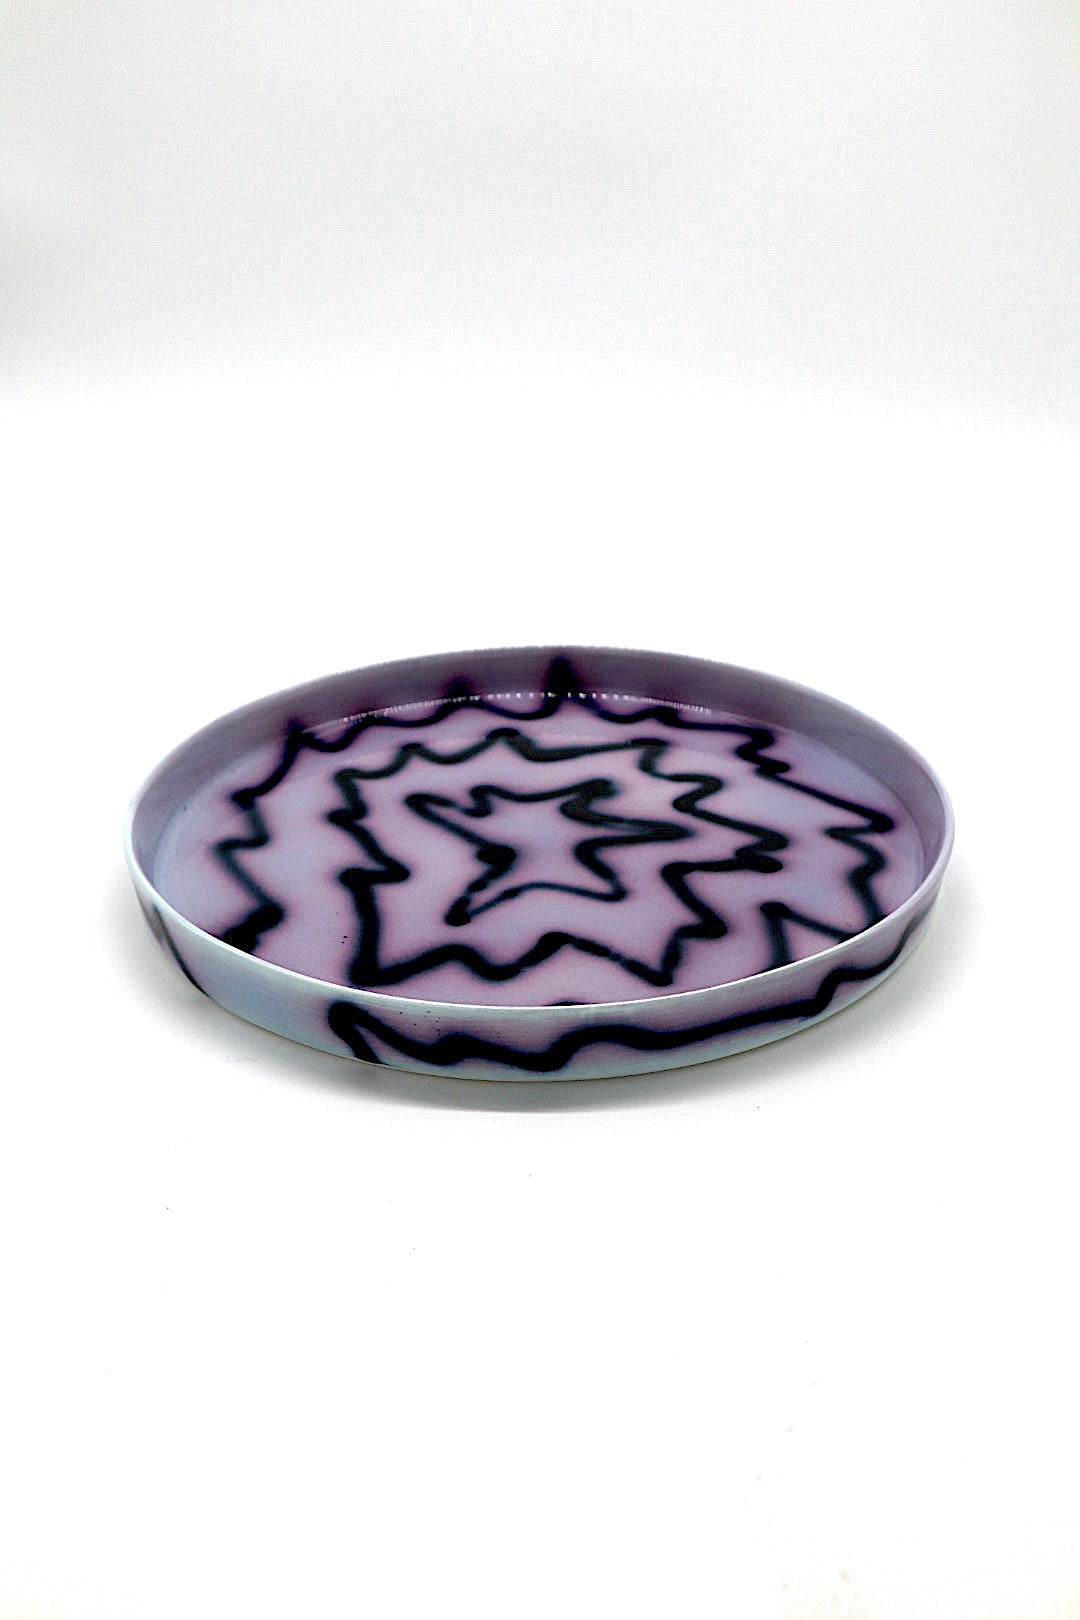 Small Tray by Frizbee Ceramics